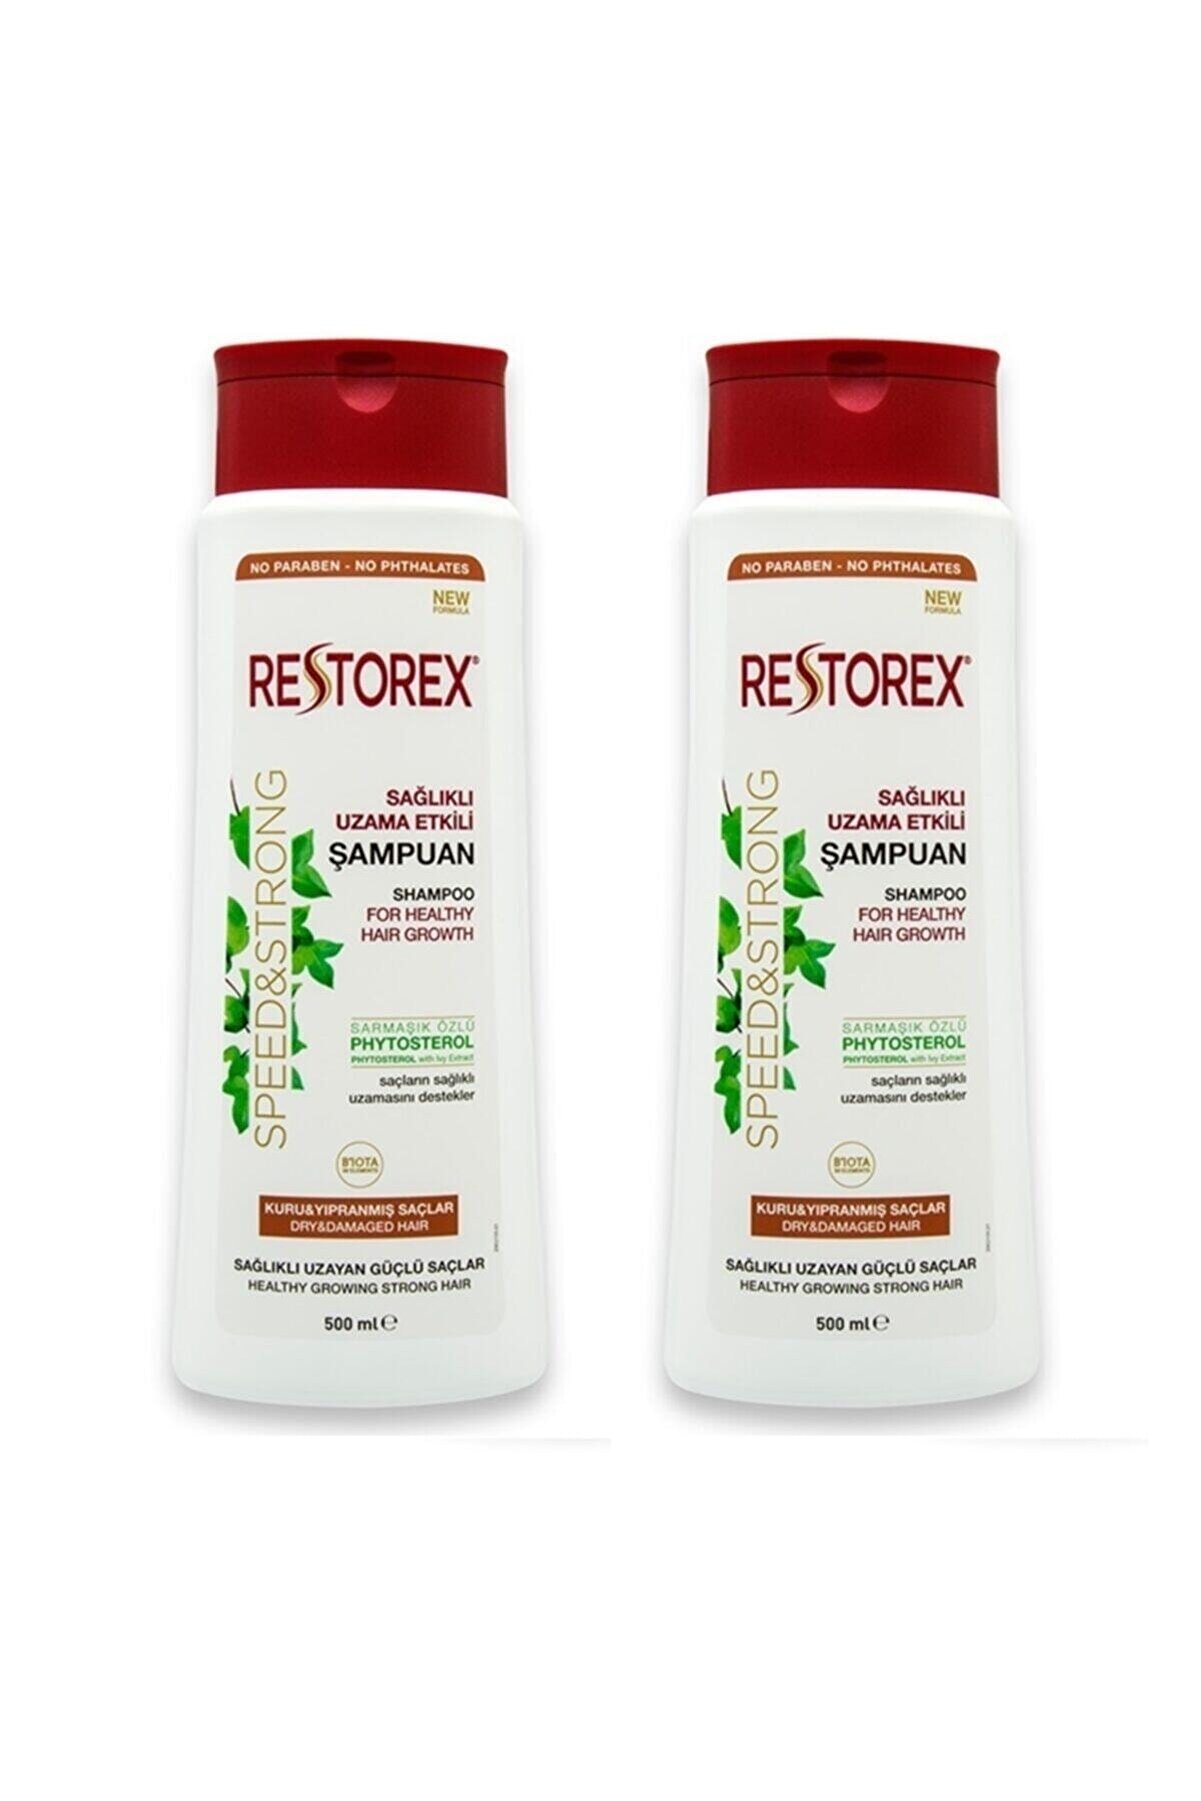 Restorex Şampuan Sağlıklı Uzama Etkili Kuru Ve Yıpranmış Saçlar Için Sarmaşık Özlü 500 ml X 2 Adet